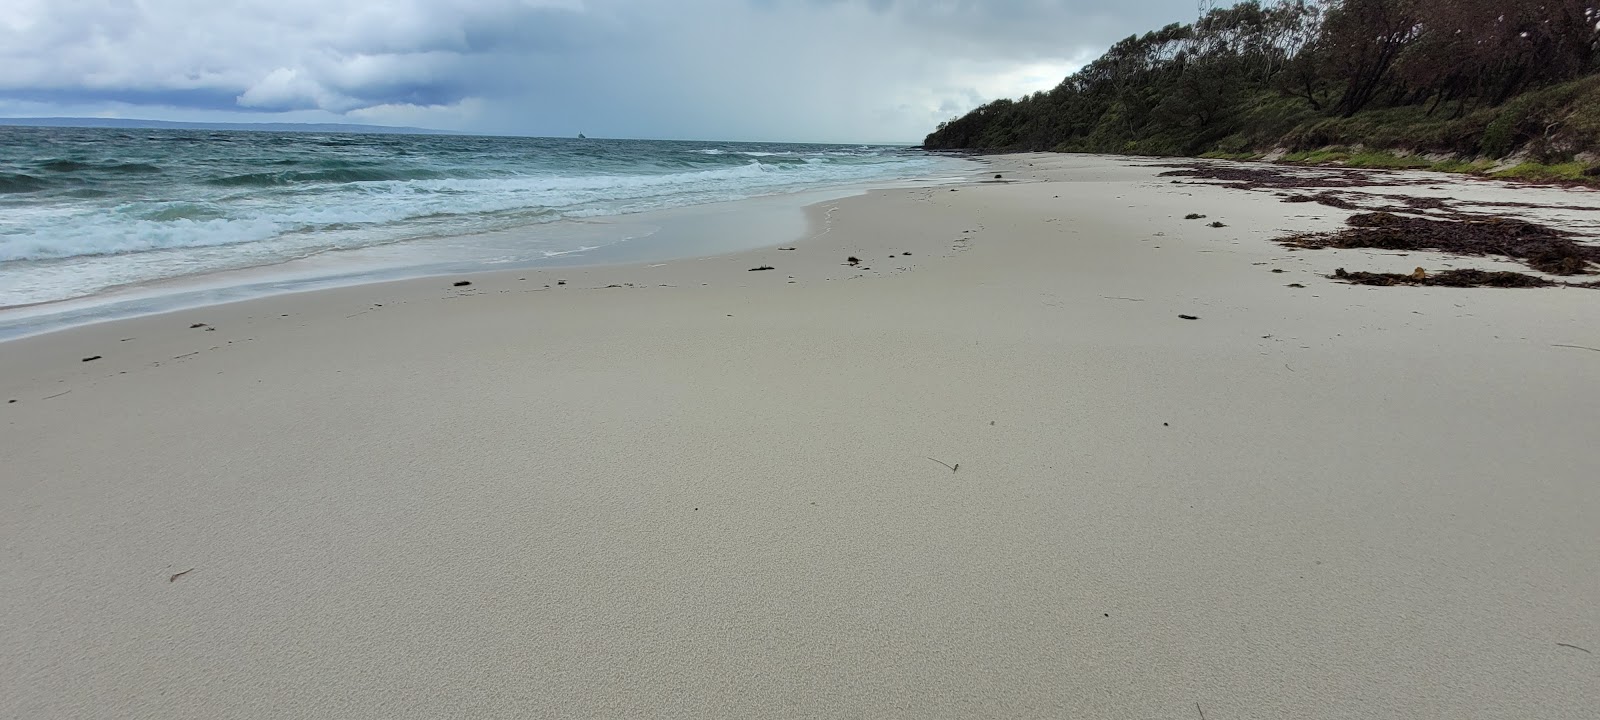 Foto de Cabbage Tree Beach con playa amplia